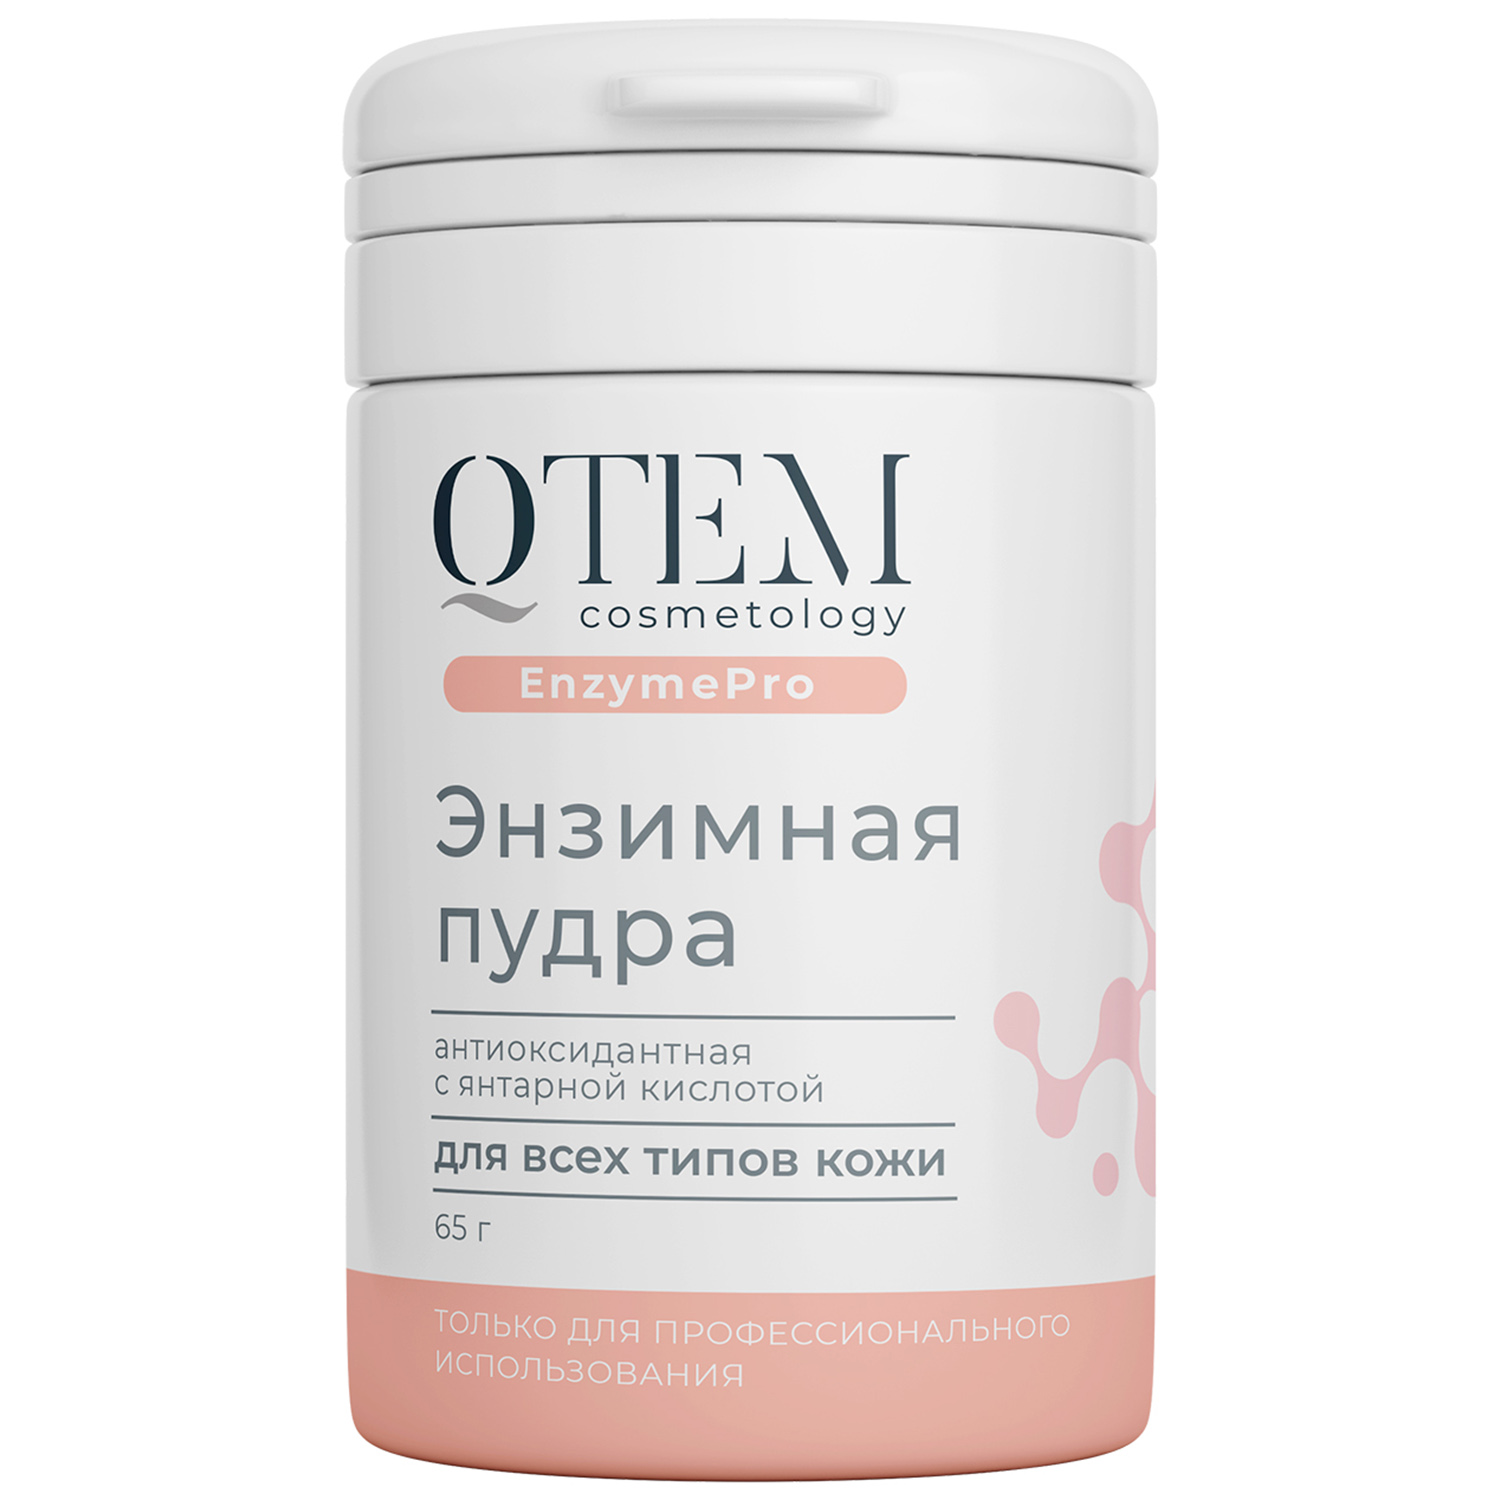 Qtem Энзимная пудра антиоксидантная с янтарной кислотой для всех типов кожи, 65 г (Qtem, Cosmetology)